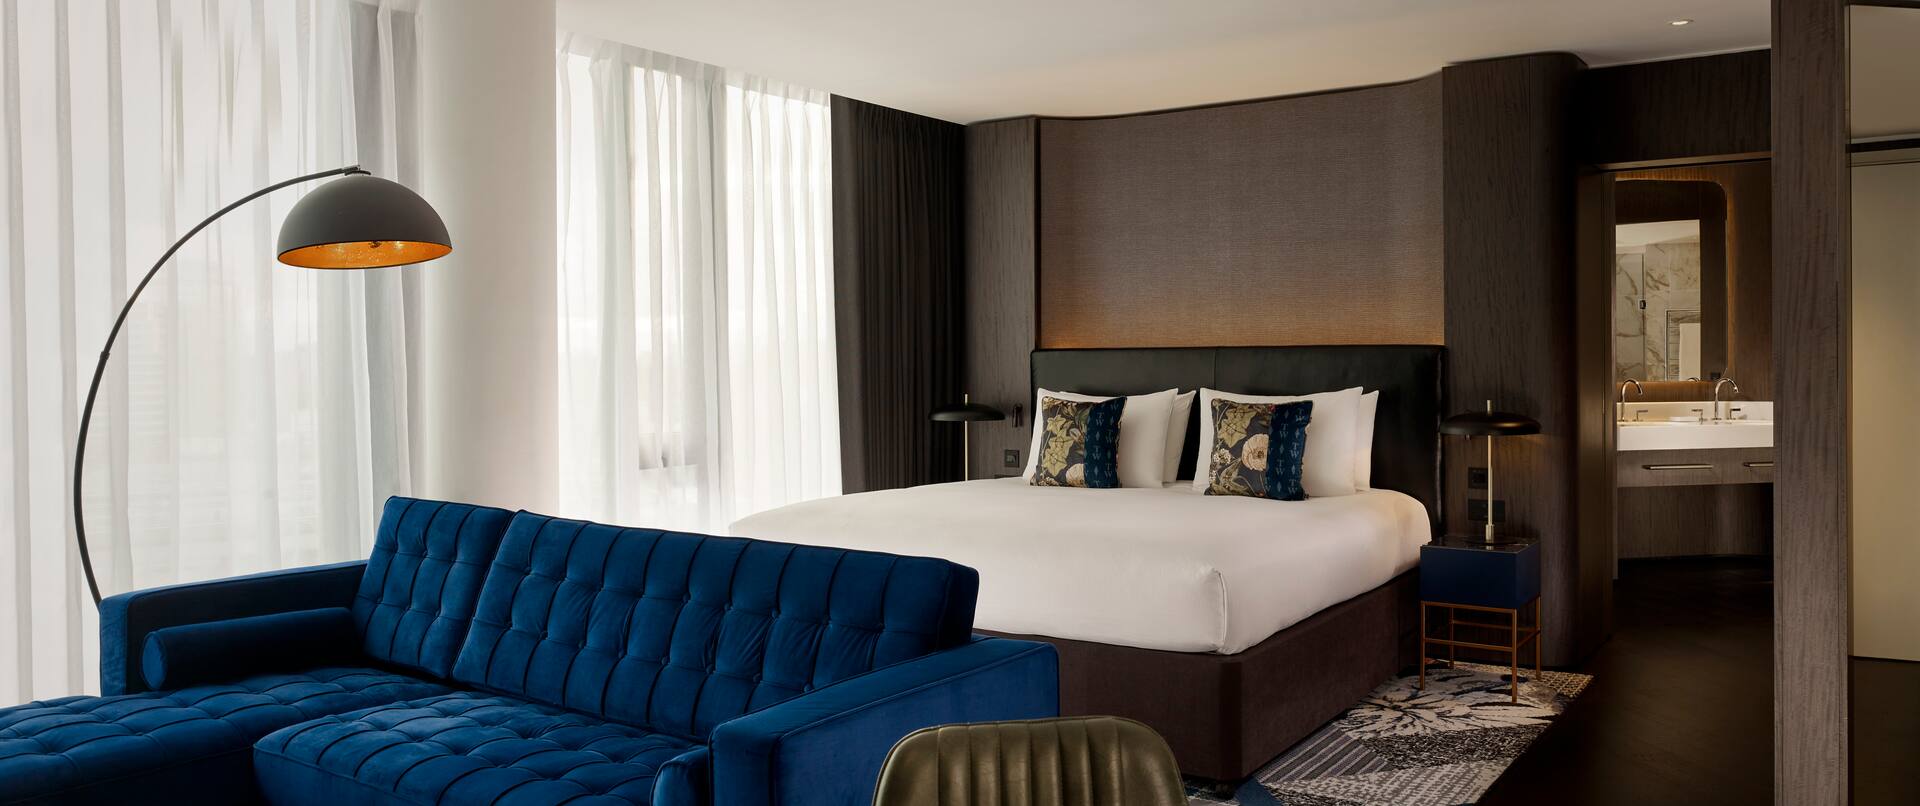 Master Suite mit Kingsize-Bett, Blick aufs Bett und das blaue Sofa